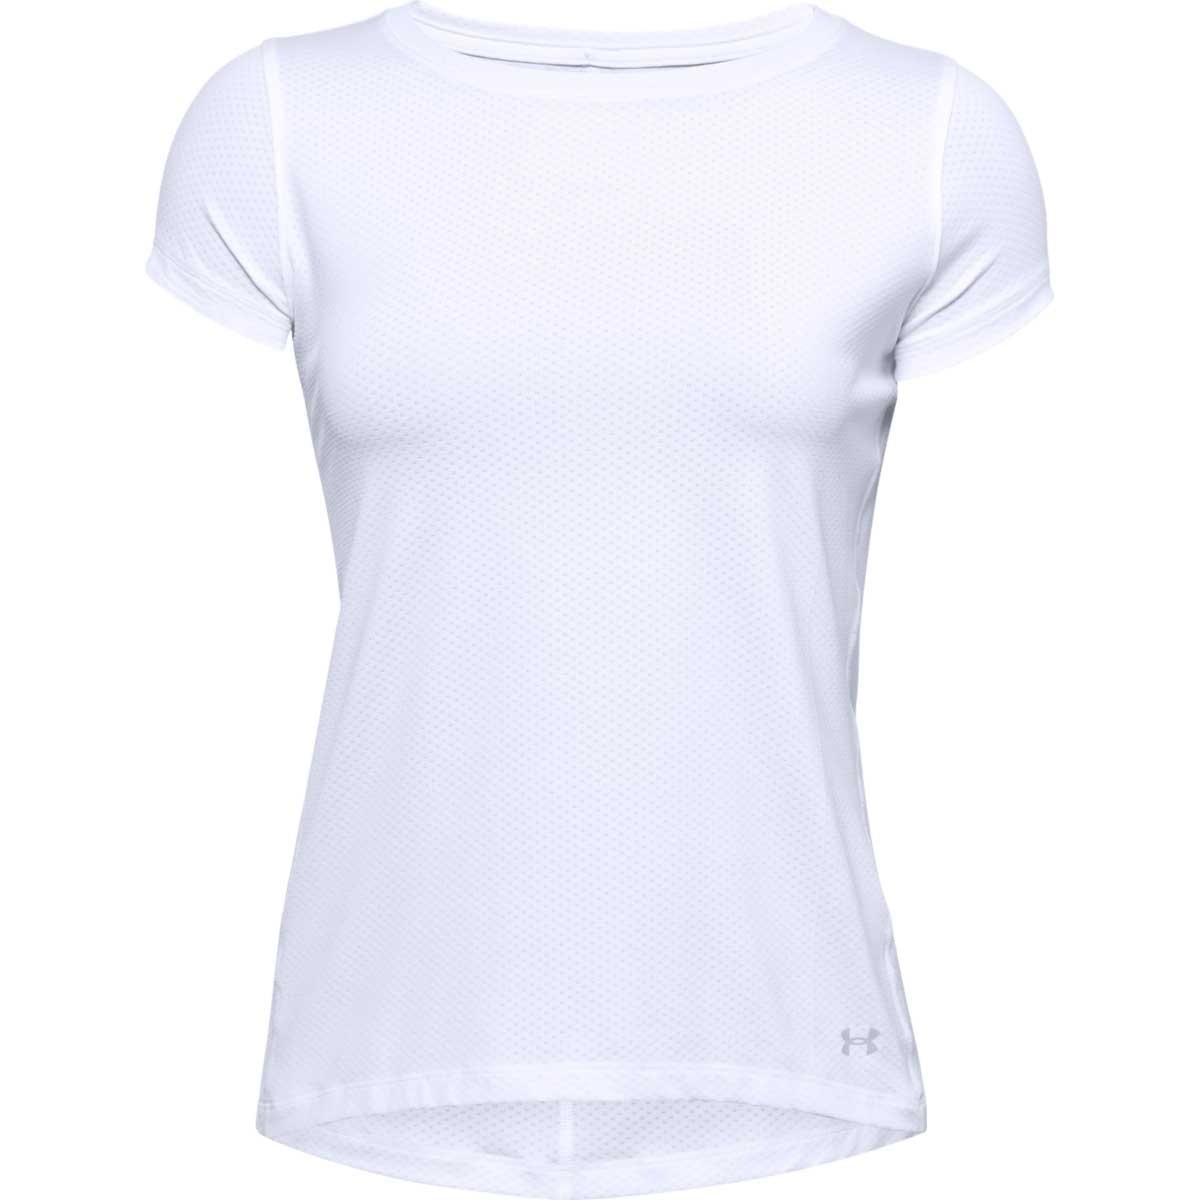  Playeras Y Camisetas Deportivas Para Mujer - Blanco